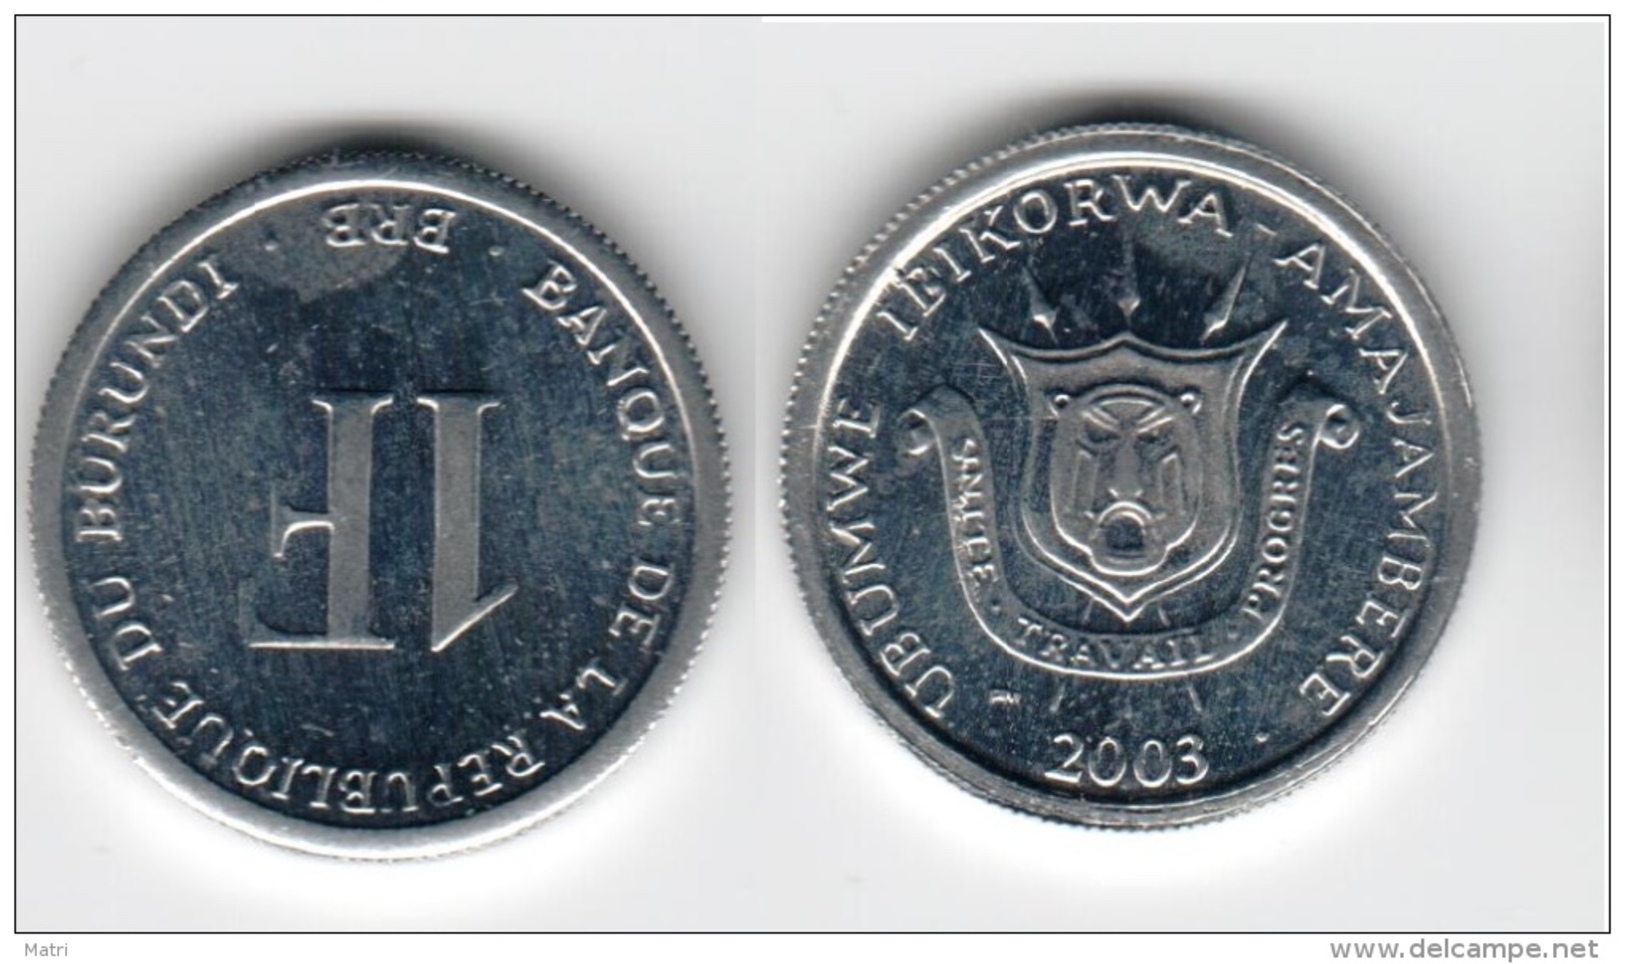 Burundi 1 Franc 2003 UNC Km#19 - Burundi